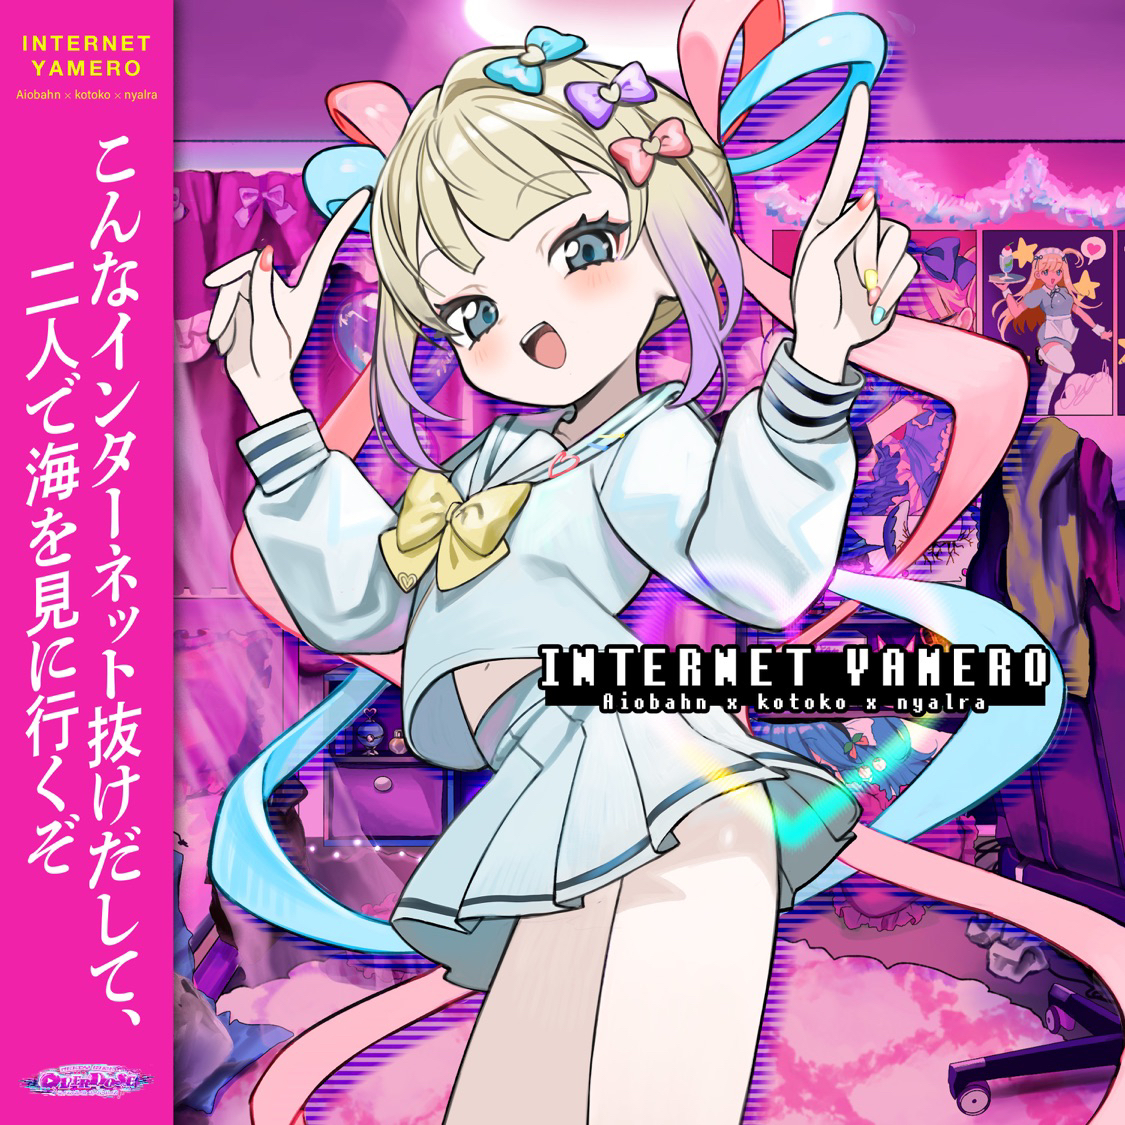 #ぬいプレ INTERNET YAMERO - NEEDY GIRL OVERDOSE & KOTOKO(INTERNET YAMERO - Single) 